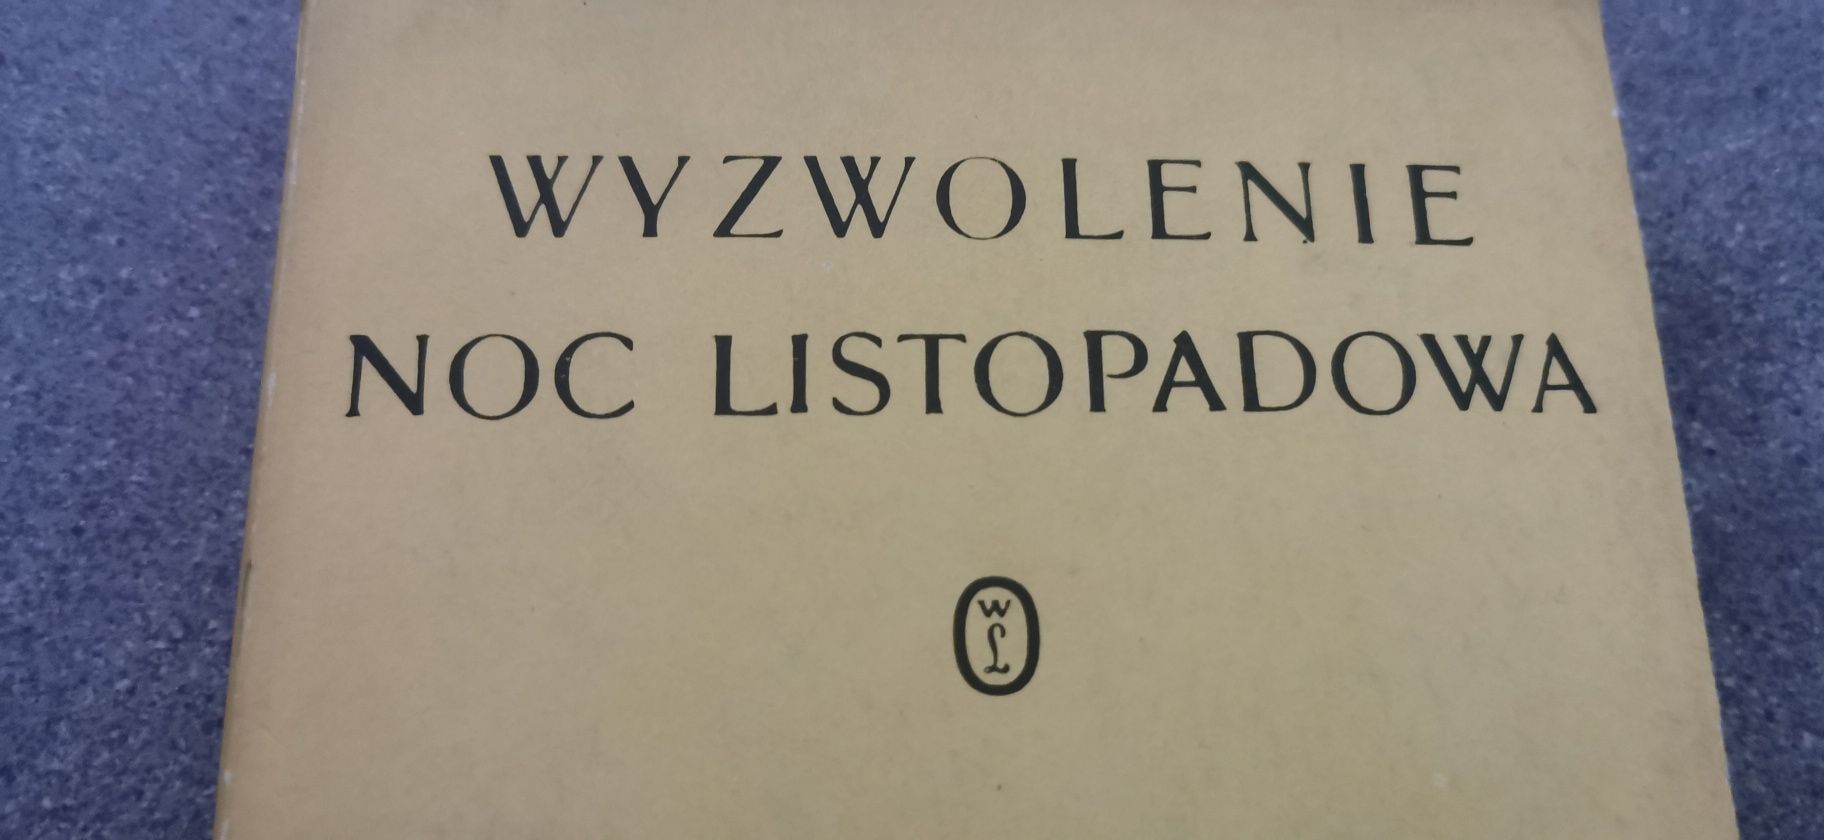 Stanisław Wyspiański Wyzwolenie Noc listopadowa